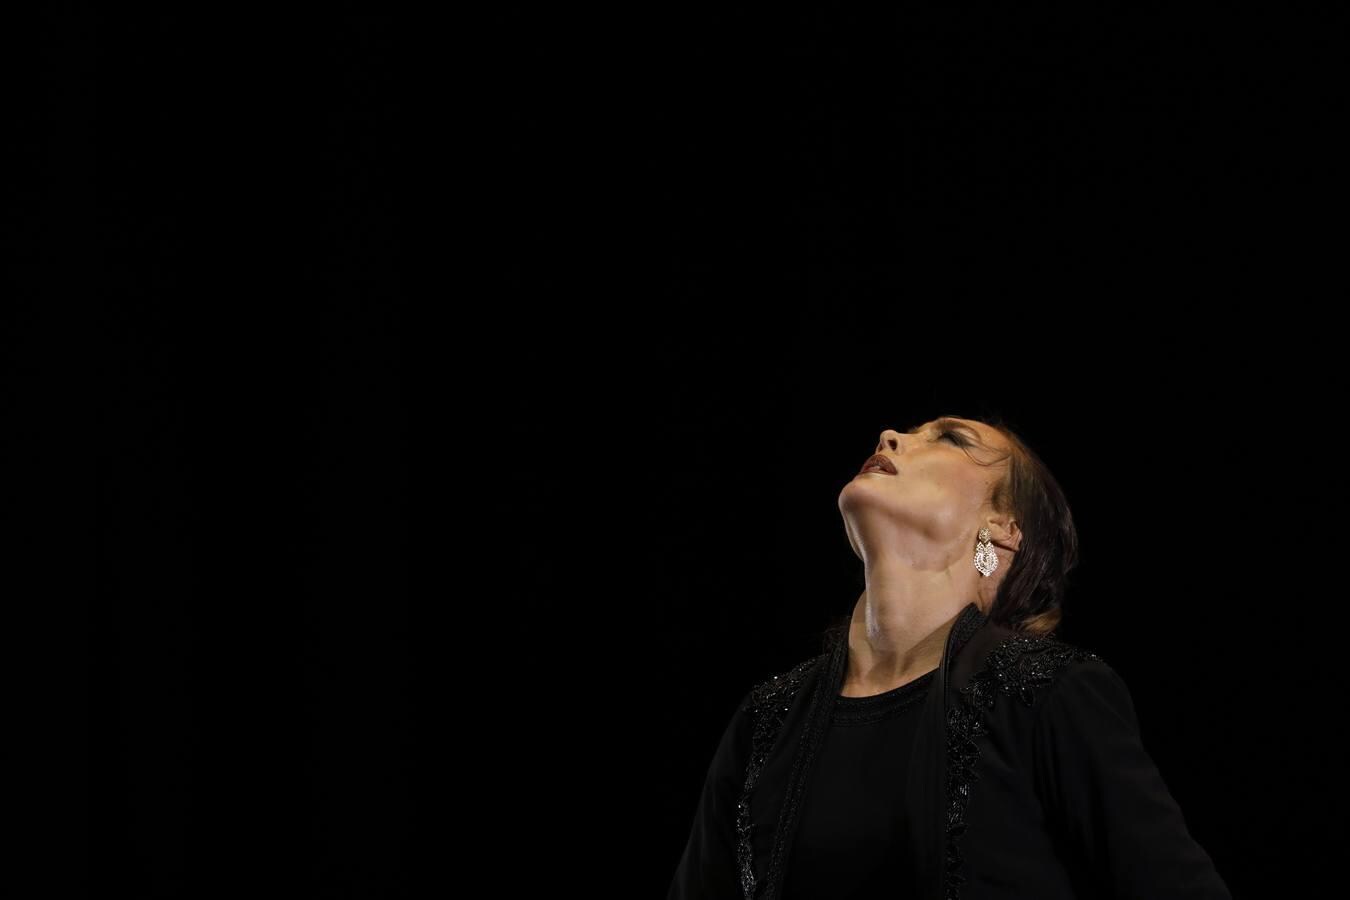 La final del Concurso Nacional de Arte Flamenco de Córdoba, en imágenes